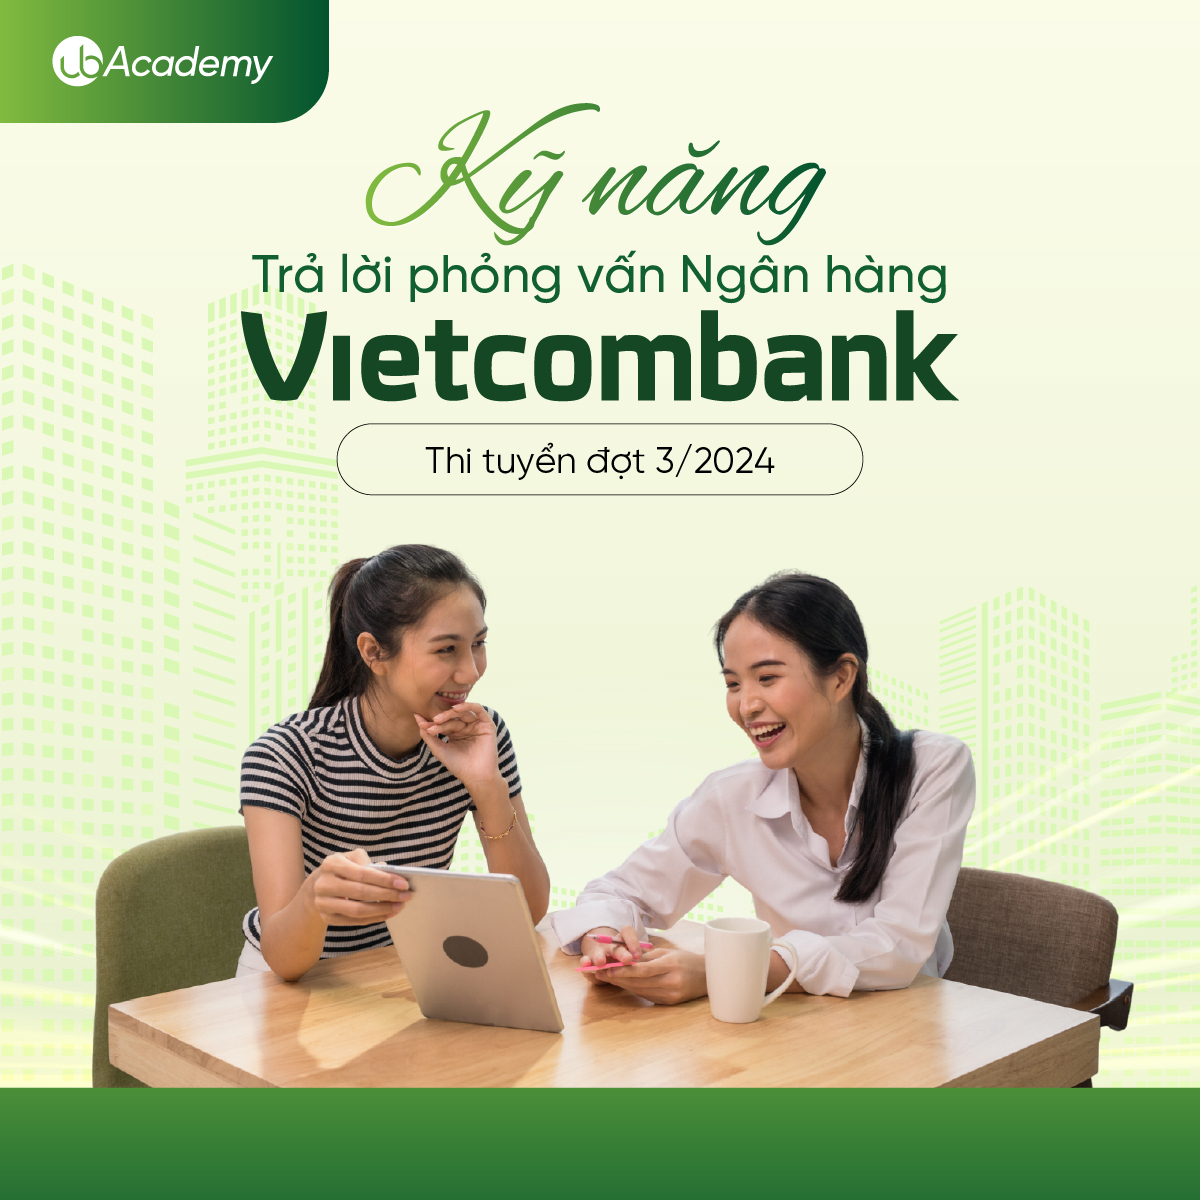 Kỹ năng Trả lời phỏng vấn Ngân hàng Vietcombank - Thi tuyển đợt 3/2024